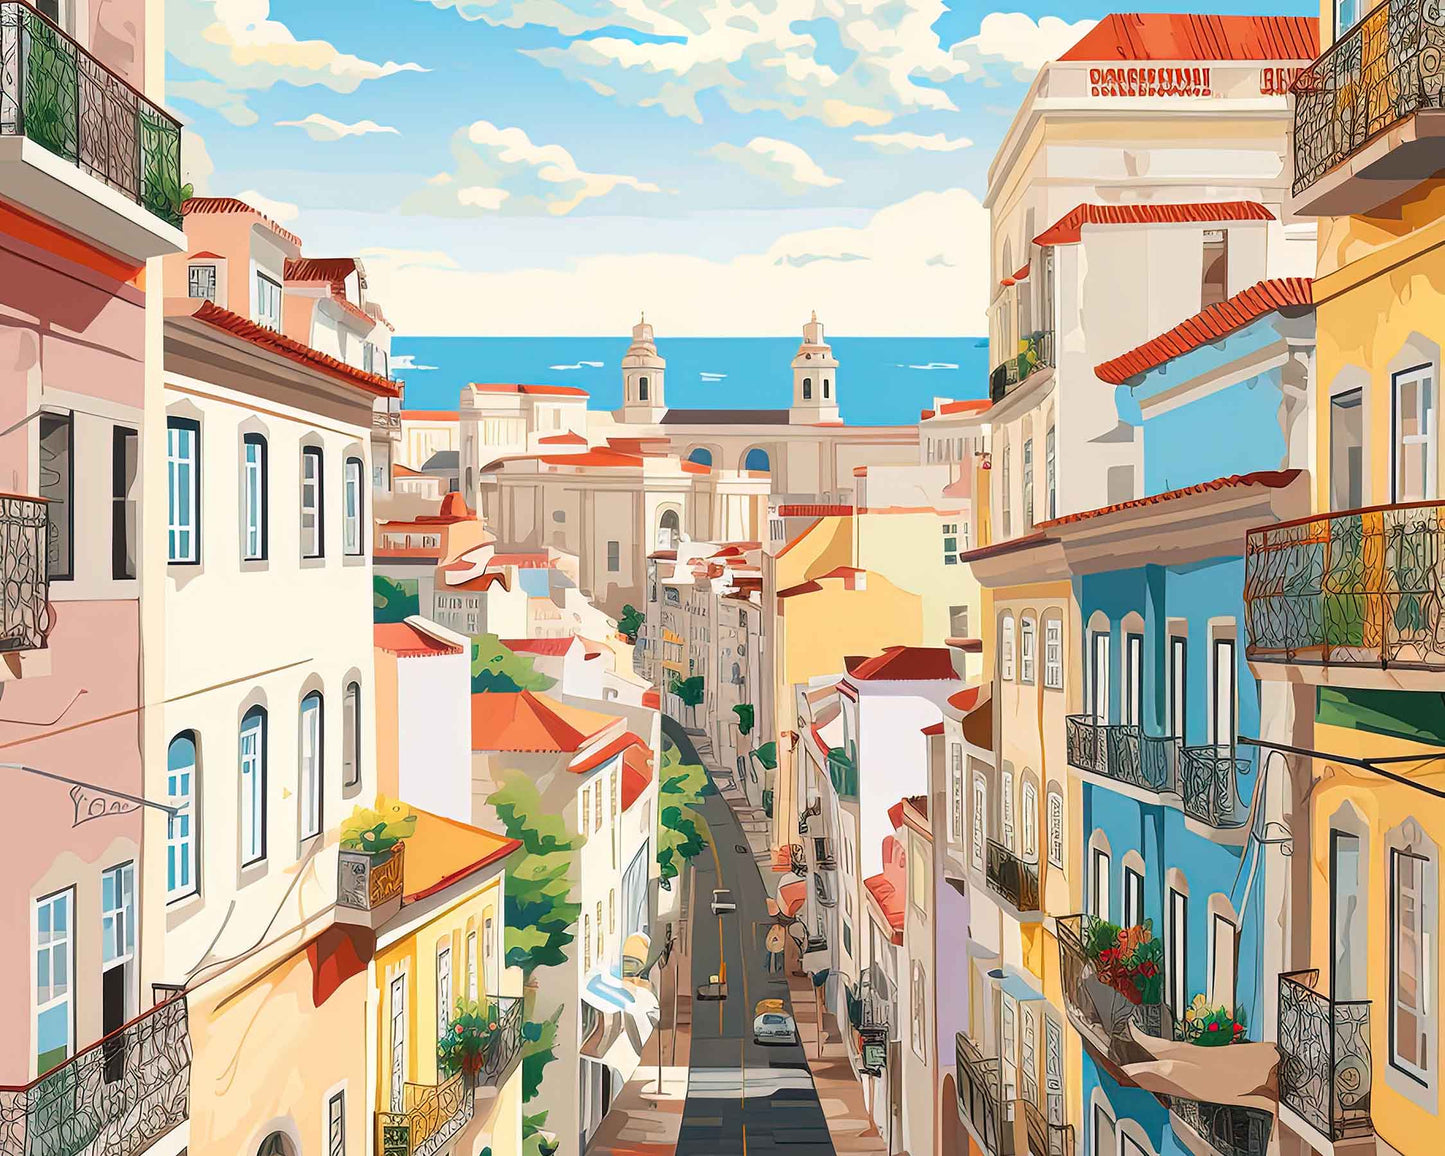 Framed Image of Lisbon Travel Poster Prints Portugal Illustration Wall Art